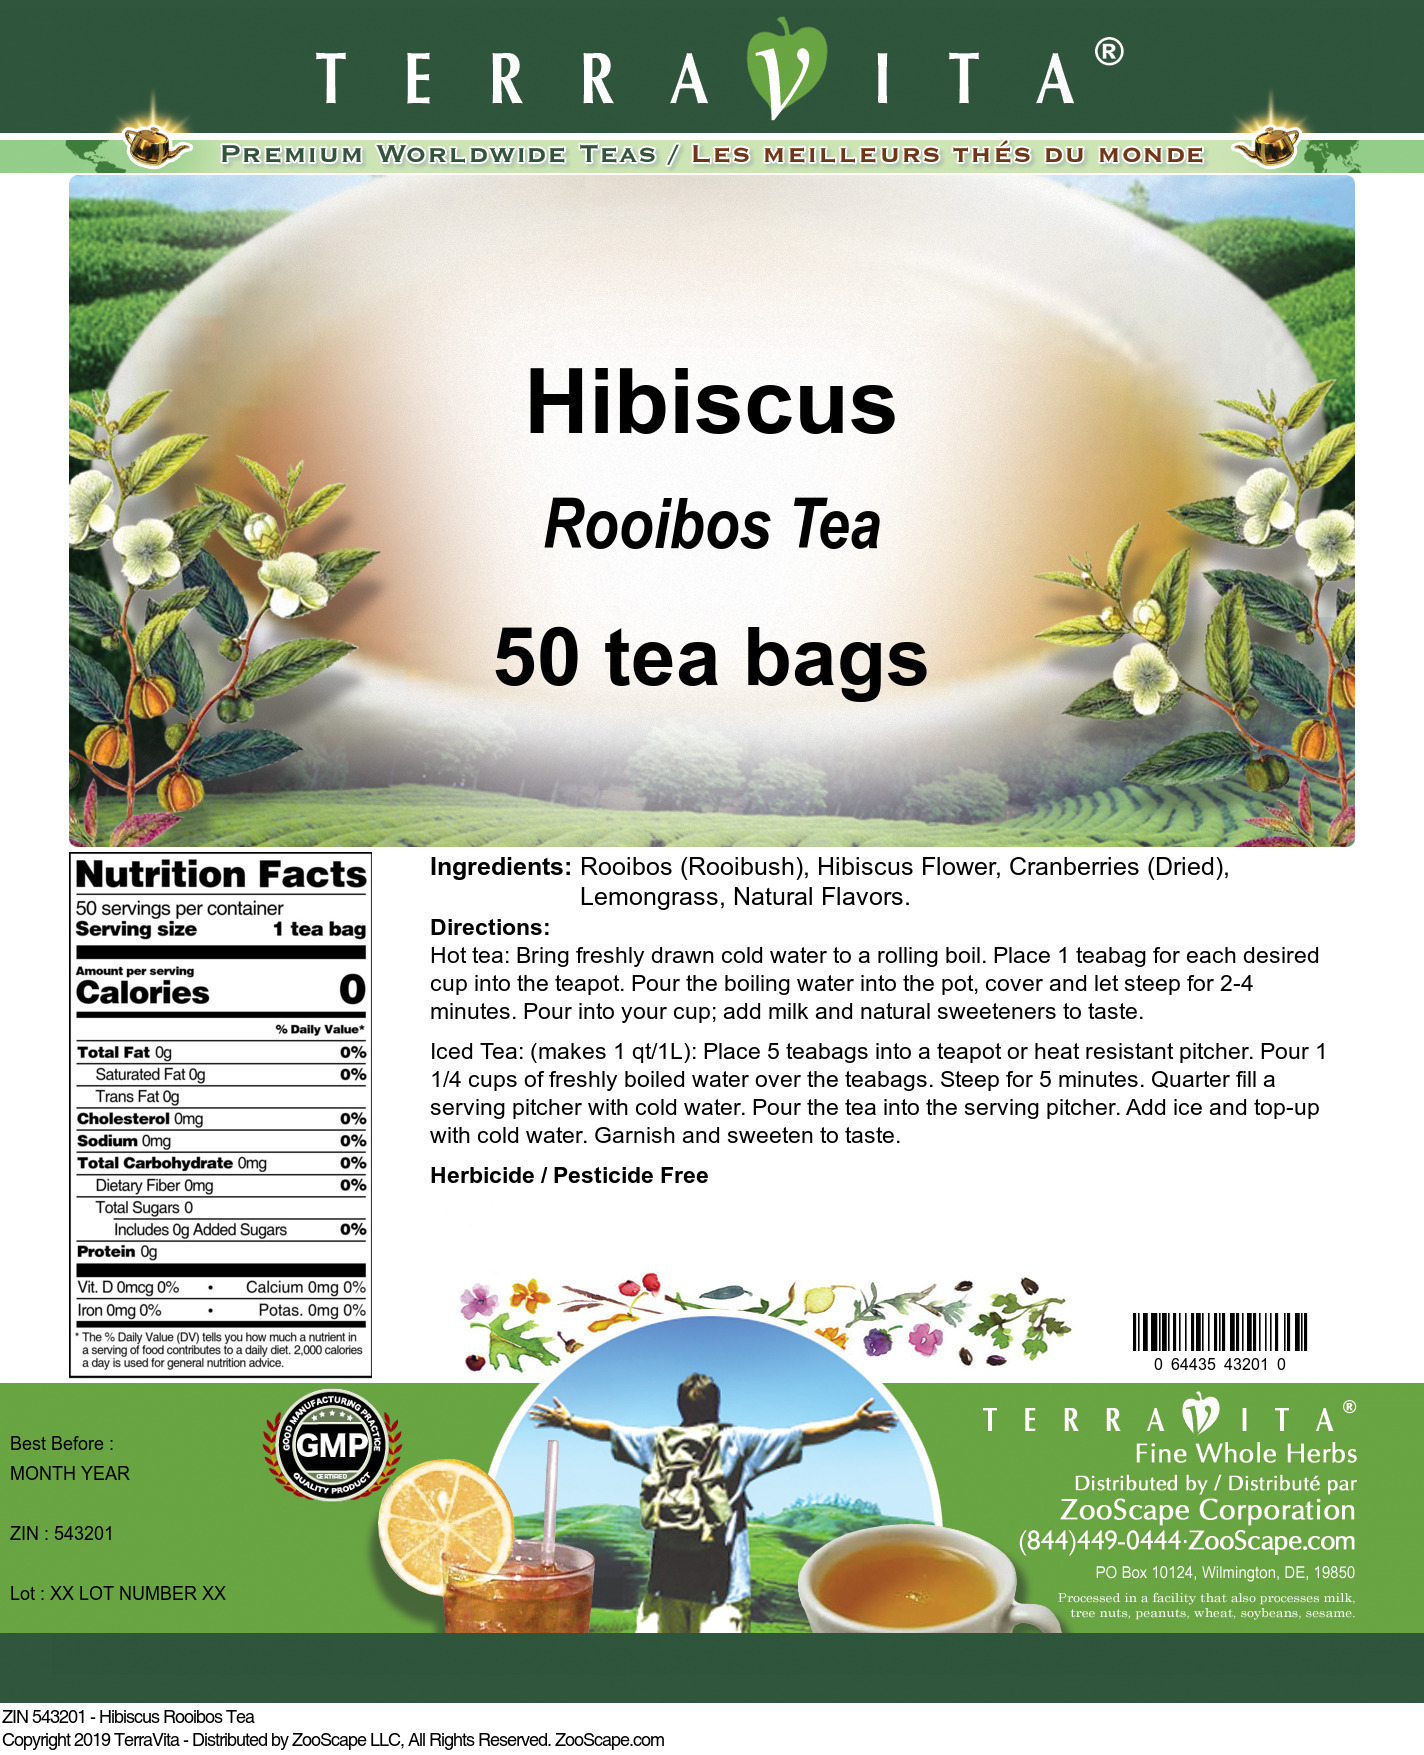 Hibiscus Rooibos Tea - Label